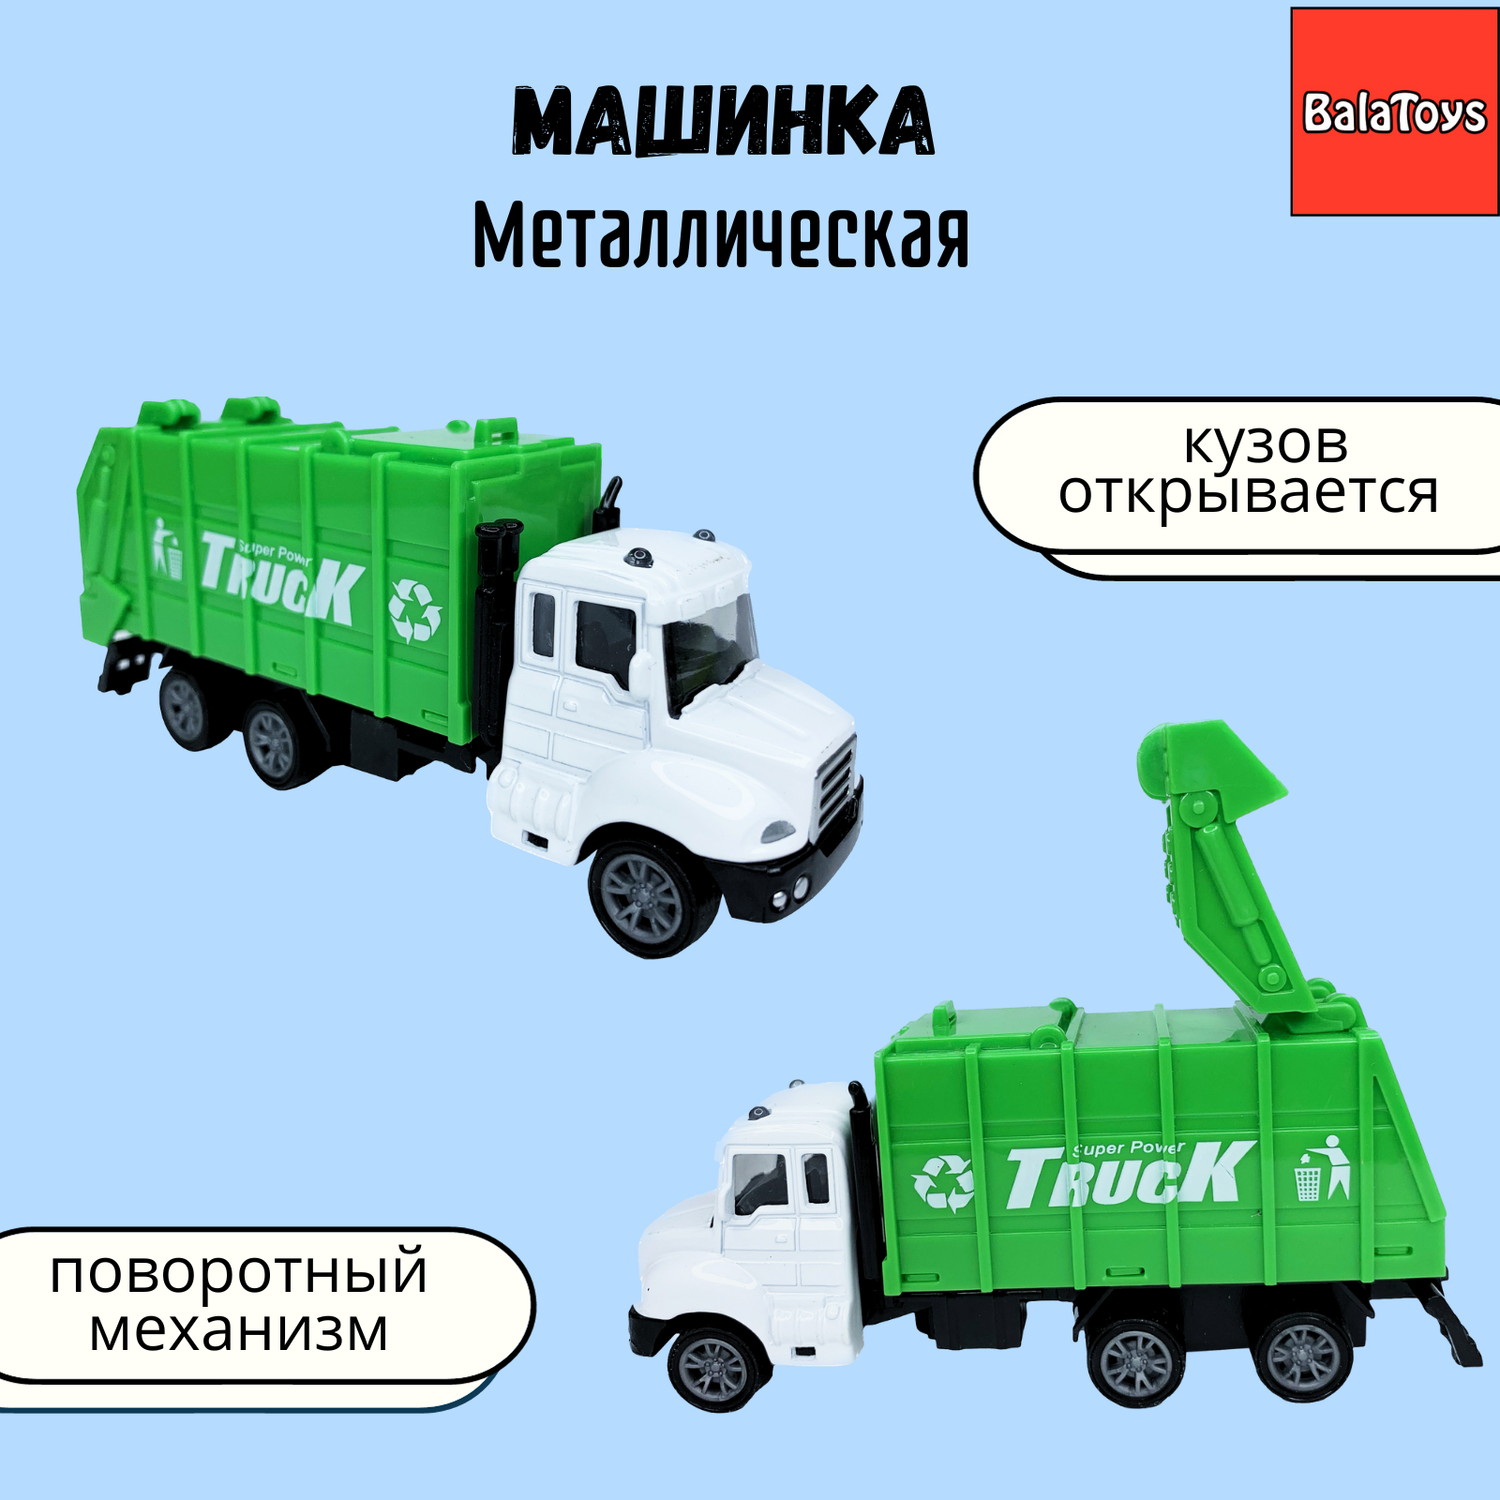 Машинка мусоровоз BalaToys с металлической кабиной и поворотными деталями WgtCarHeavy3 - фото 1